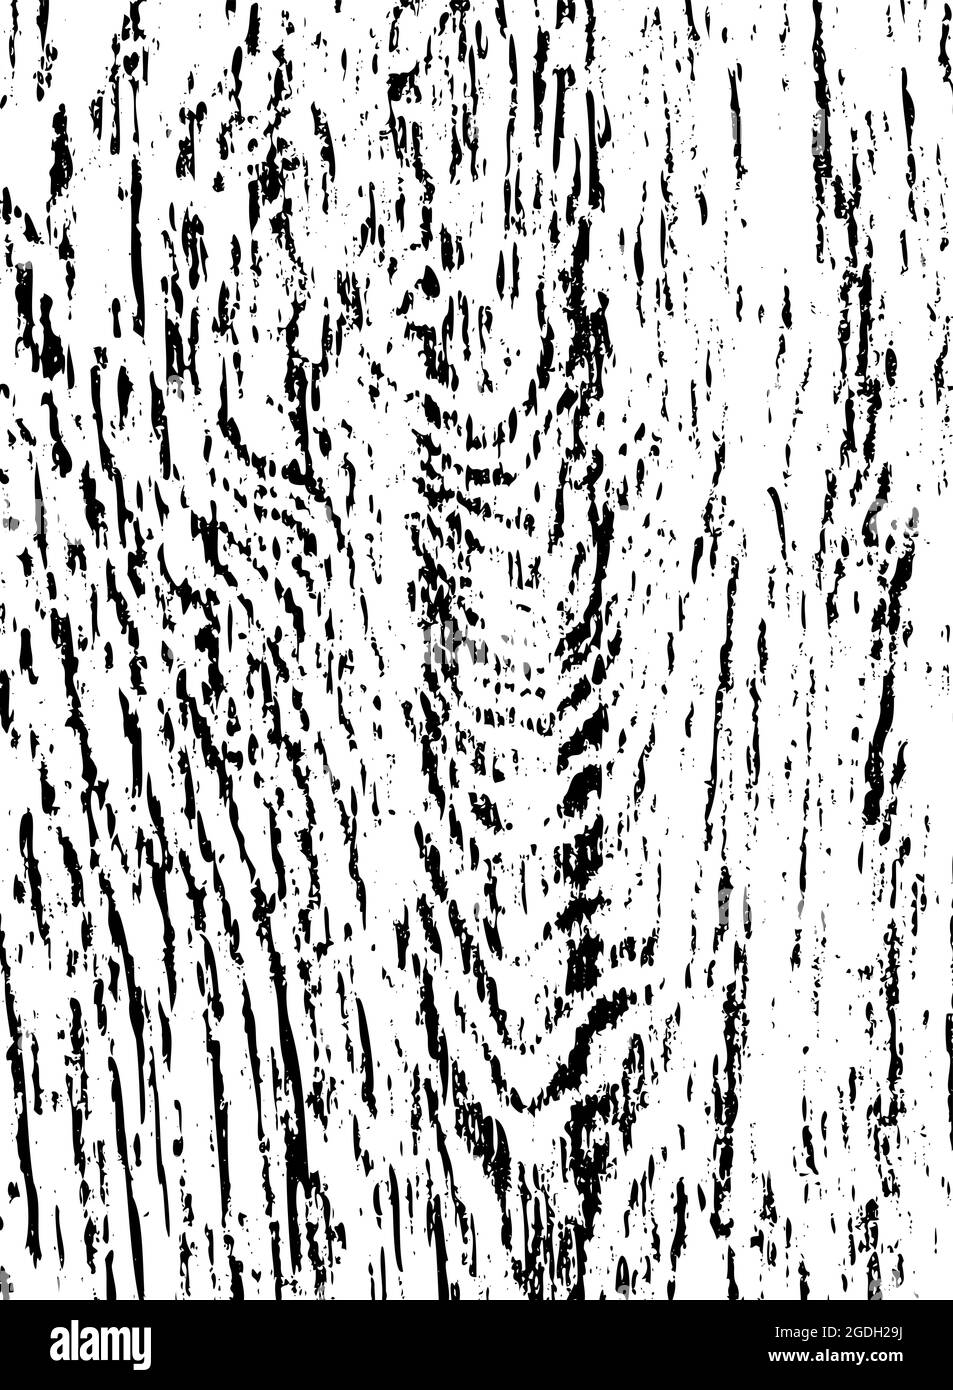 Nahtloser abstrakter Holzbanner. Schwarze handgezeichnete Punkte auf weißem Hintergrund. Baumstruktur, Farbflecken, Körnung, Farbspritzer, Pinselstrich, Kratzen Stock Vektor